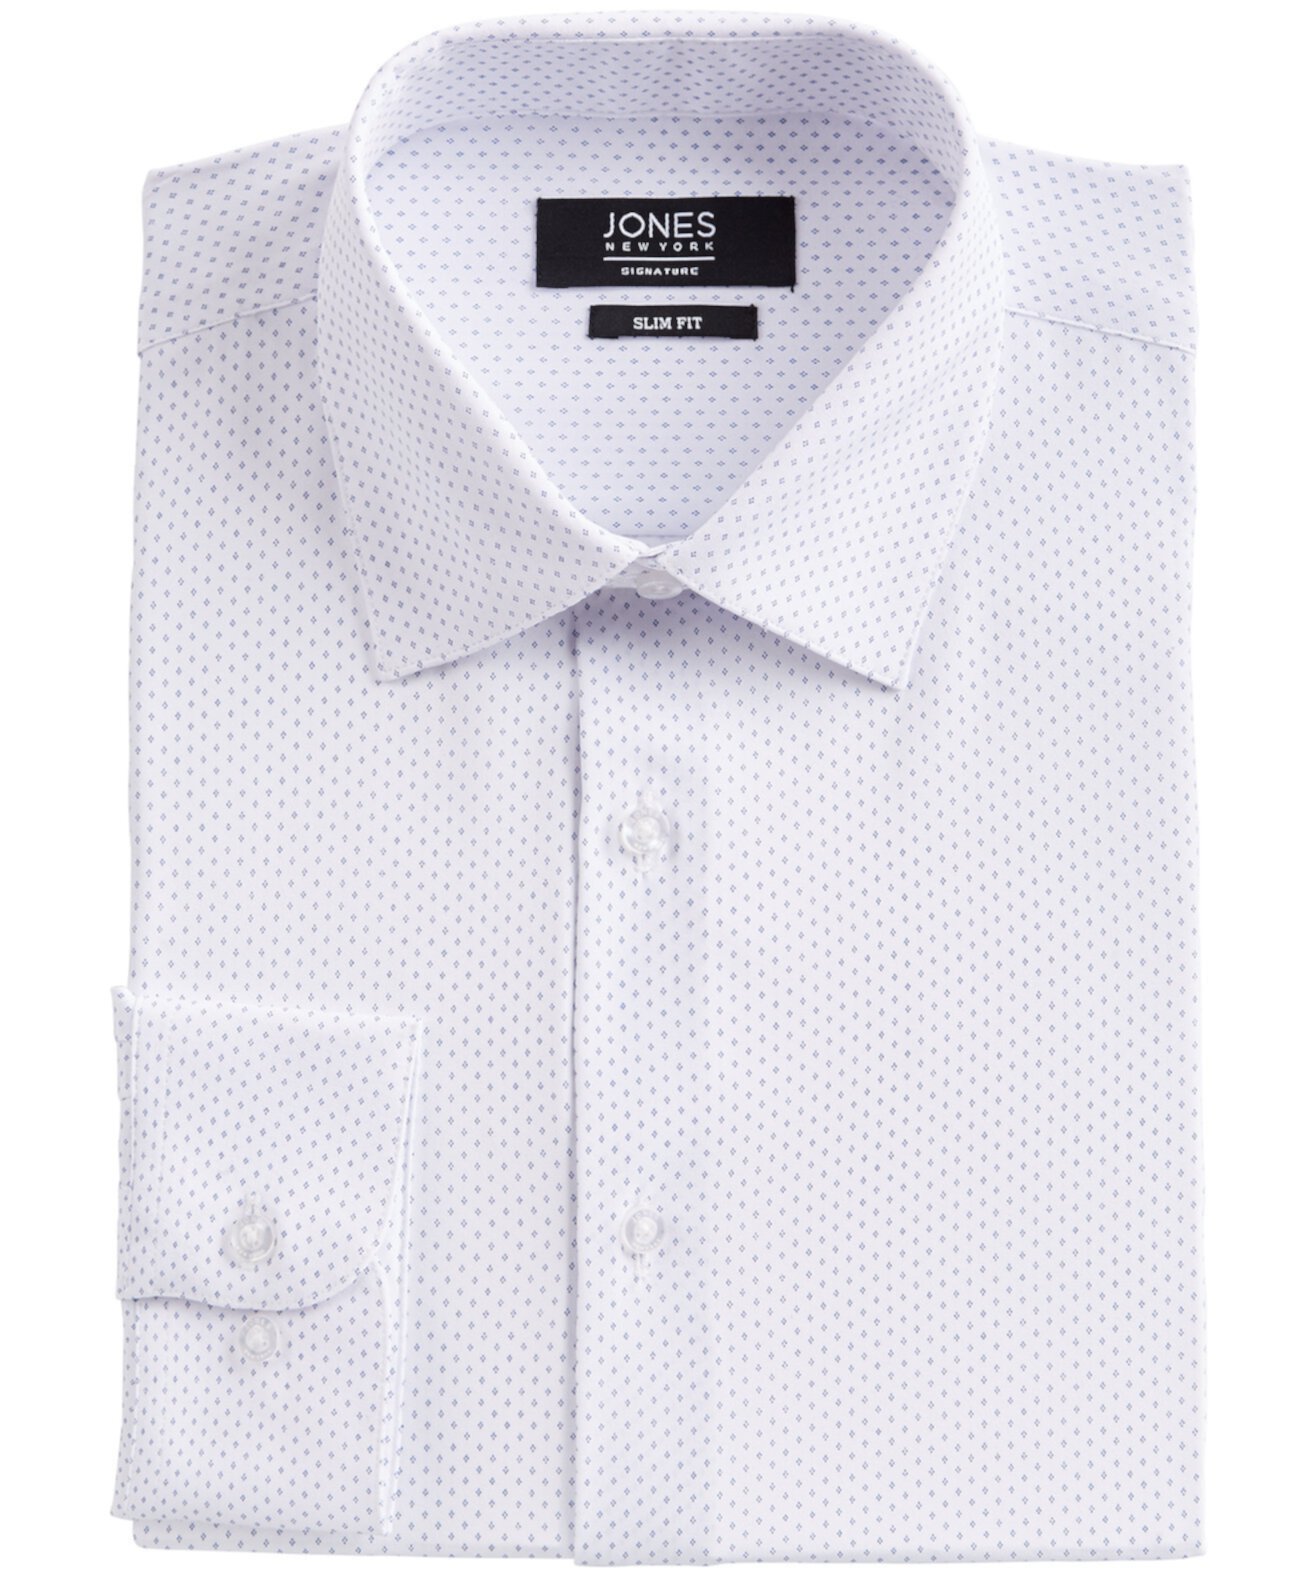 Мужская приталенная классическая рубашка из эластичной ткани в четыре стороны белого / синего цвета в горошек с ромбовидным принтом Jones New York